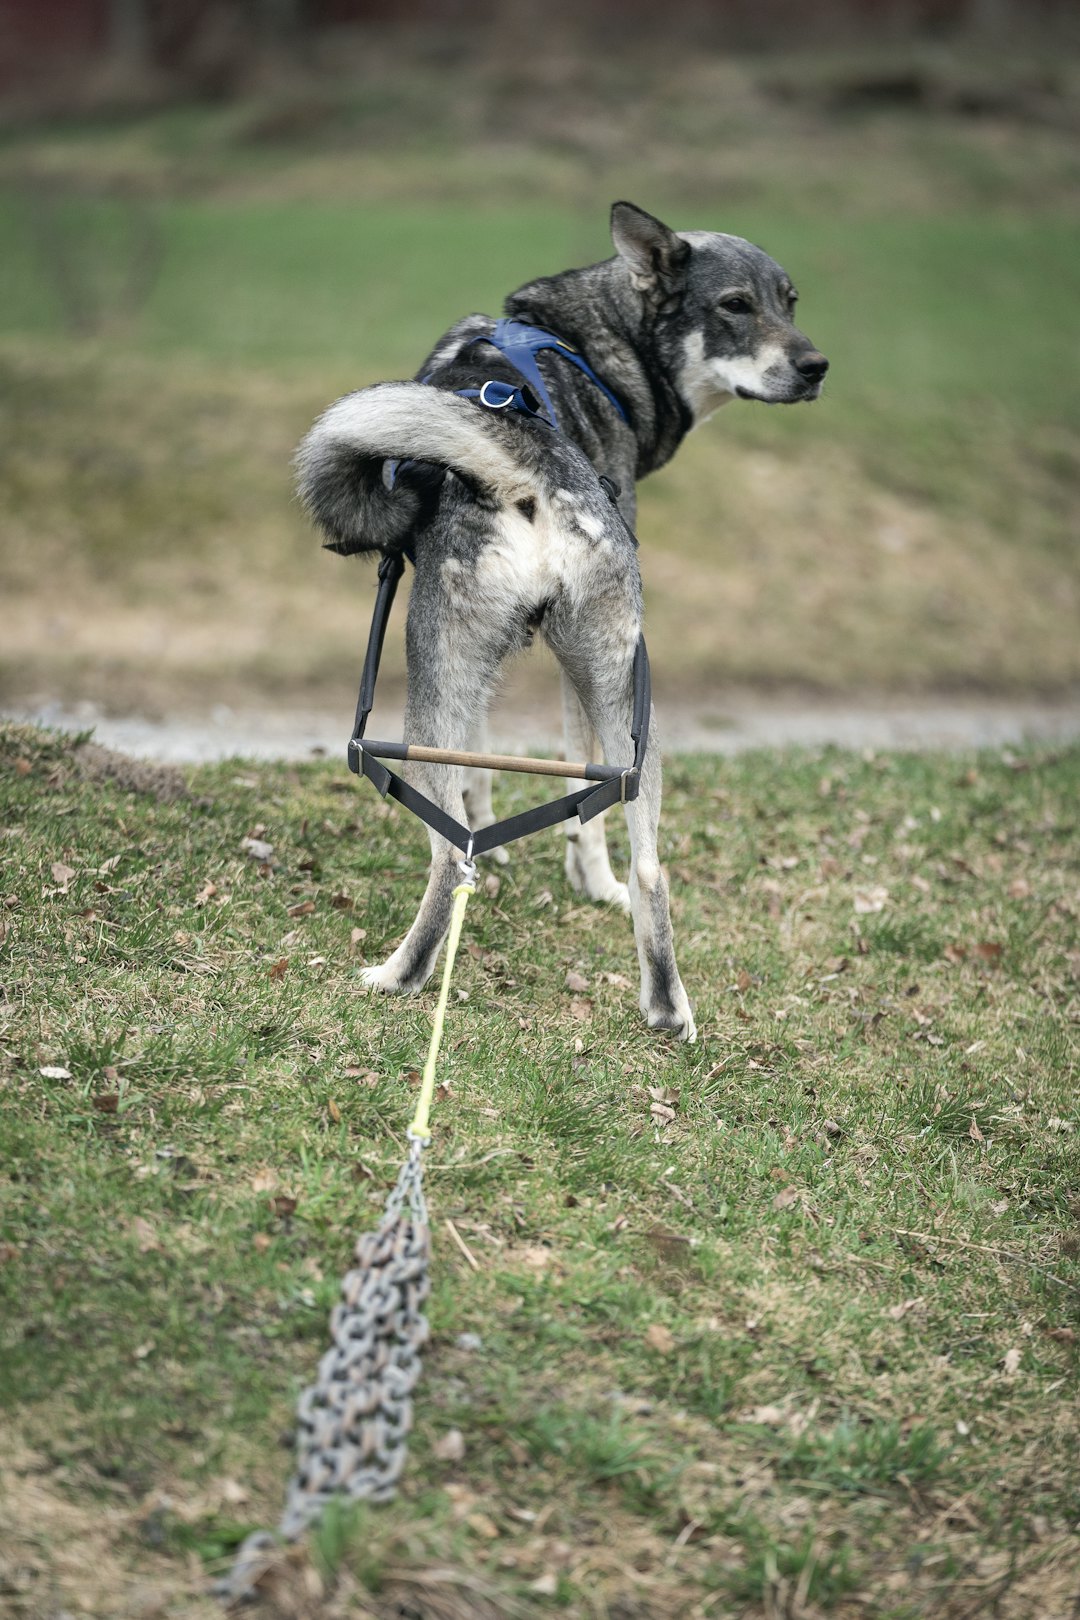 Kjetting: Kjettingtrekk styrker både rygg og bakpart, samtidig som det gir god mulighet til å trene kontakt og lydighet med hunden.